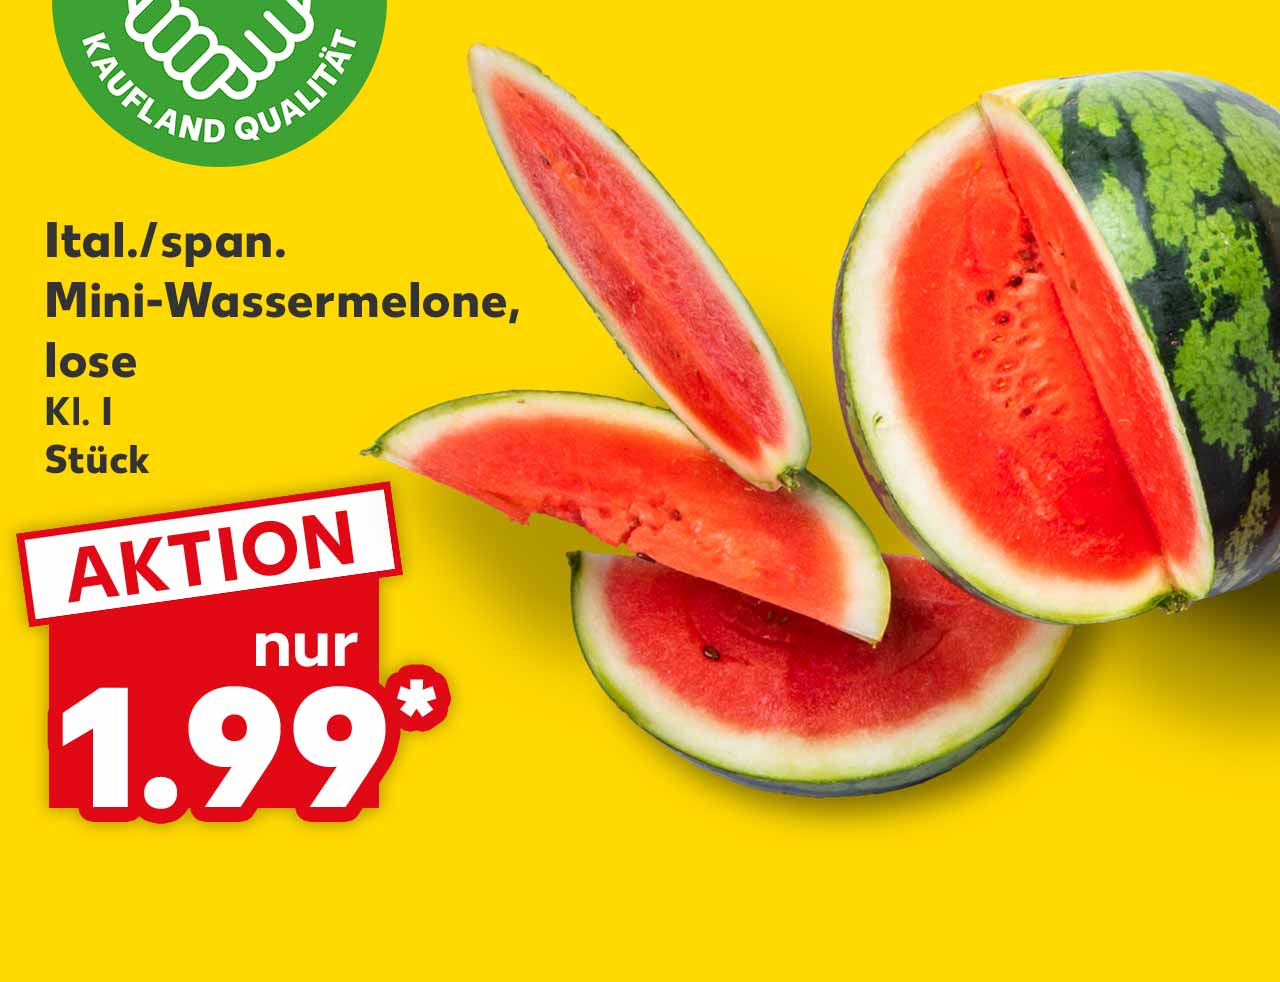 Ital./span. Mini-Wassermelone, lose, Kl. I, Stück für 1.99 Euro*; Logo: Frischeversprechen Kaufland Qualität